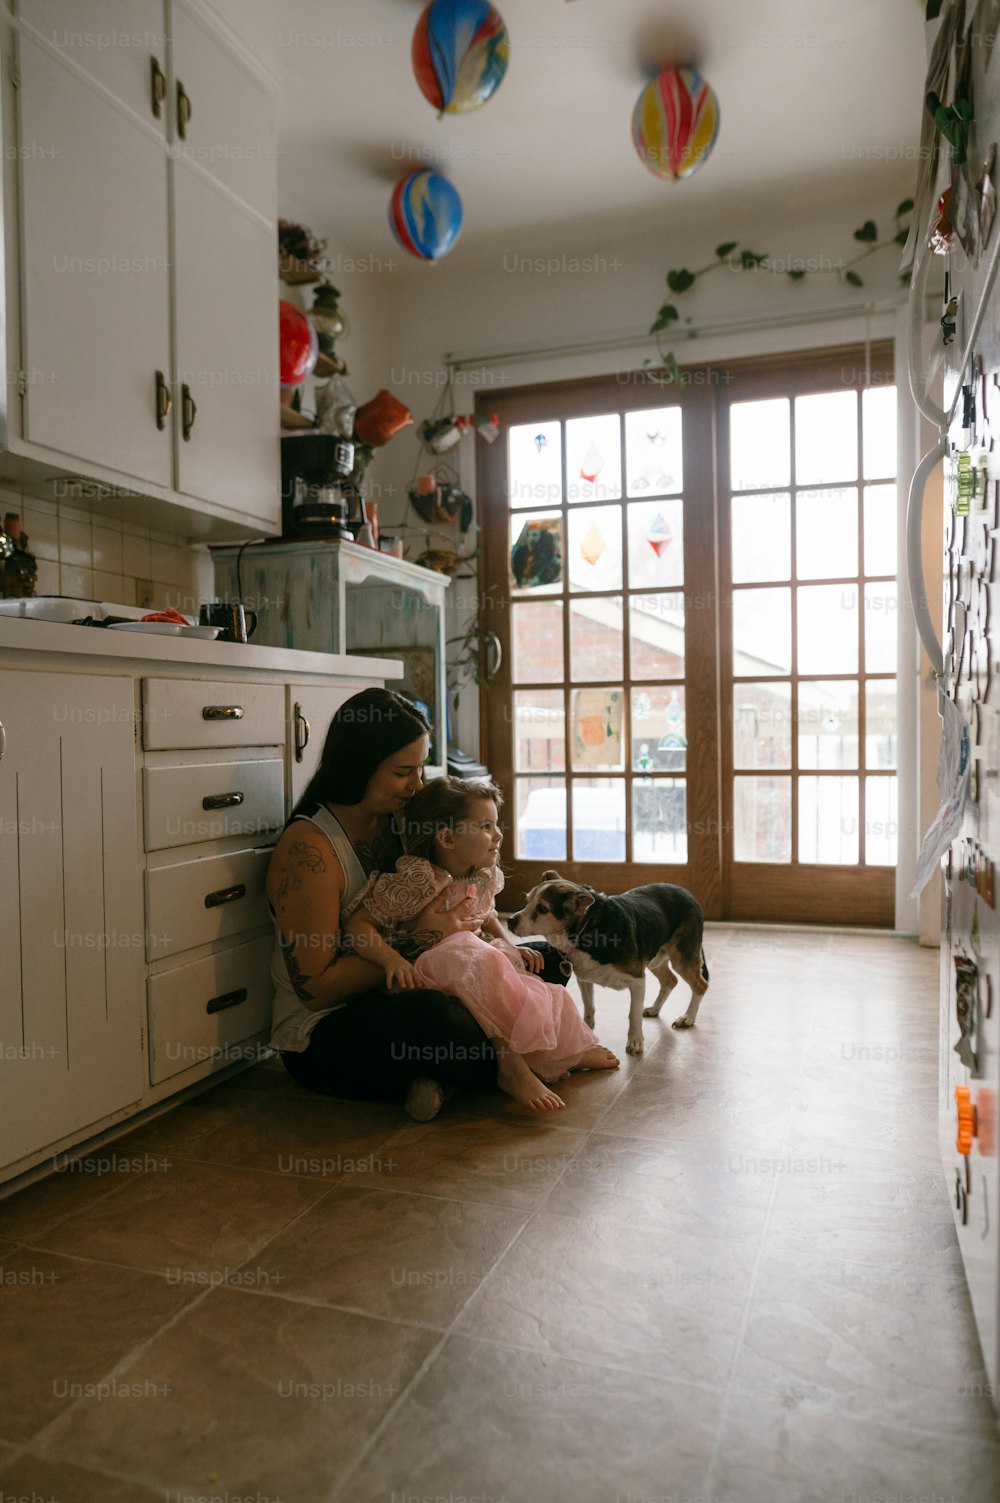 Eine Frau, die mit einem Kind und einem Hund auf dem Boden sitzt